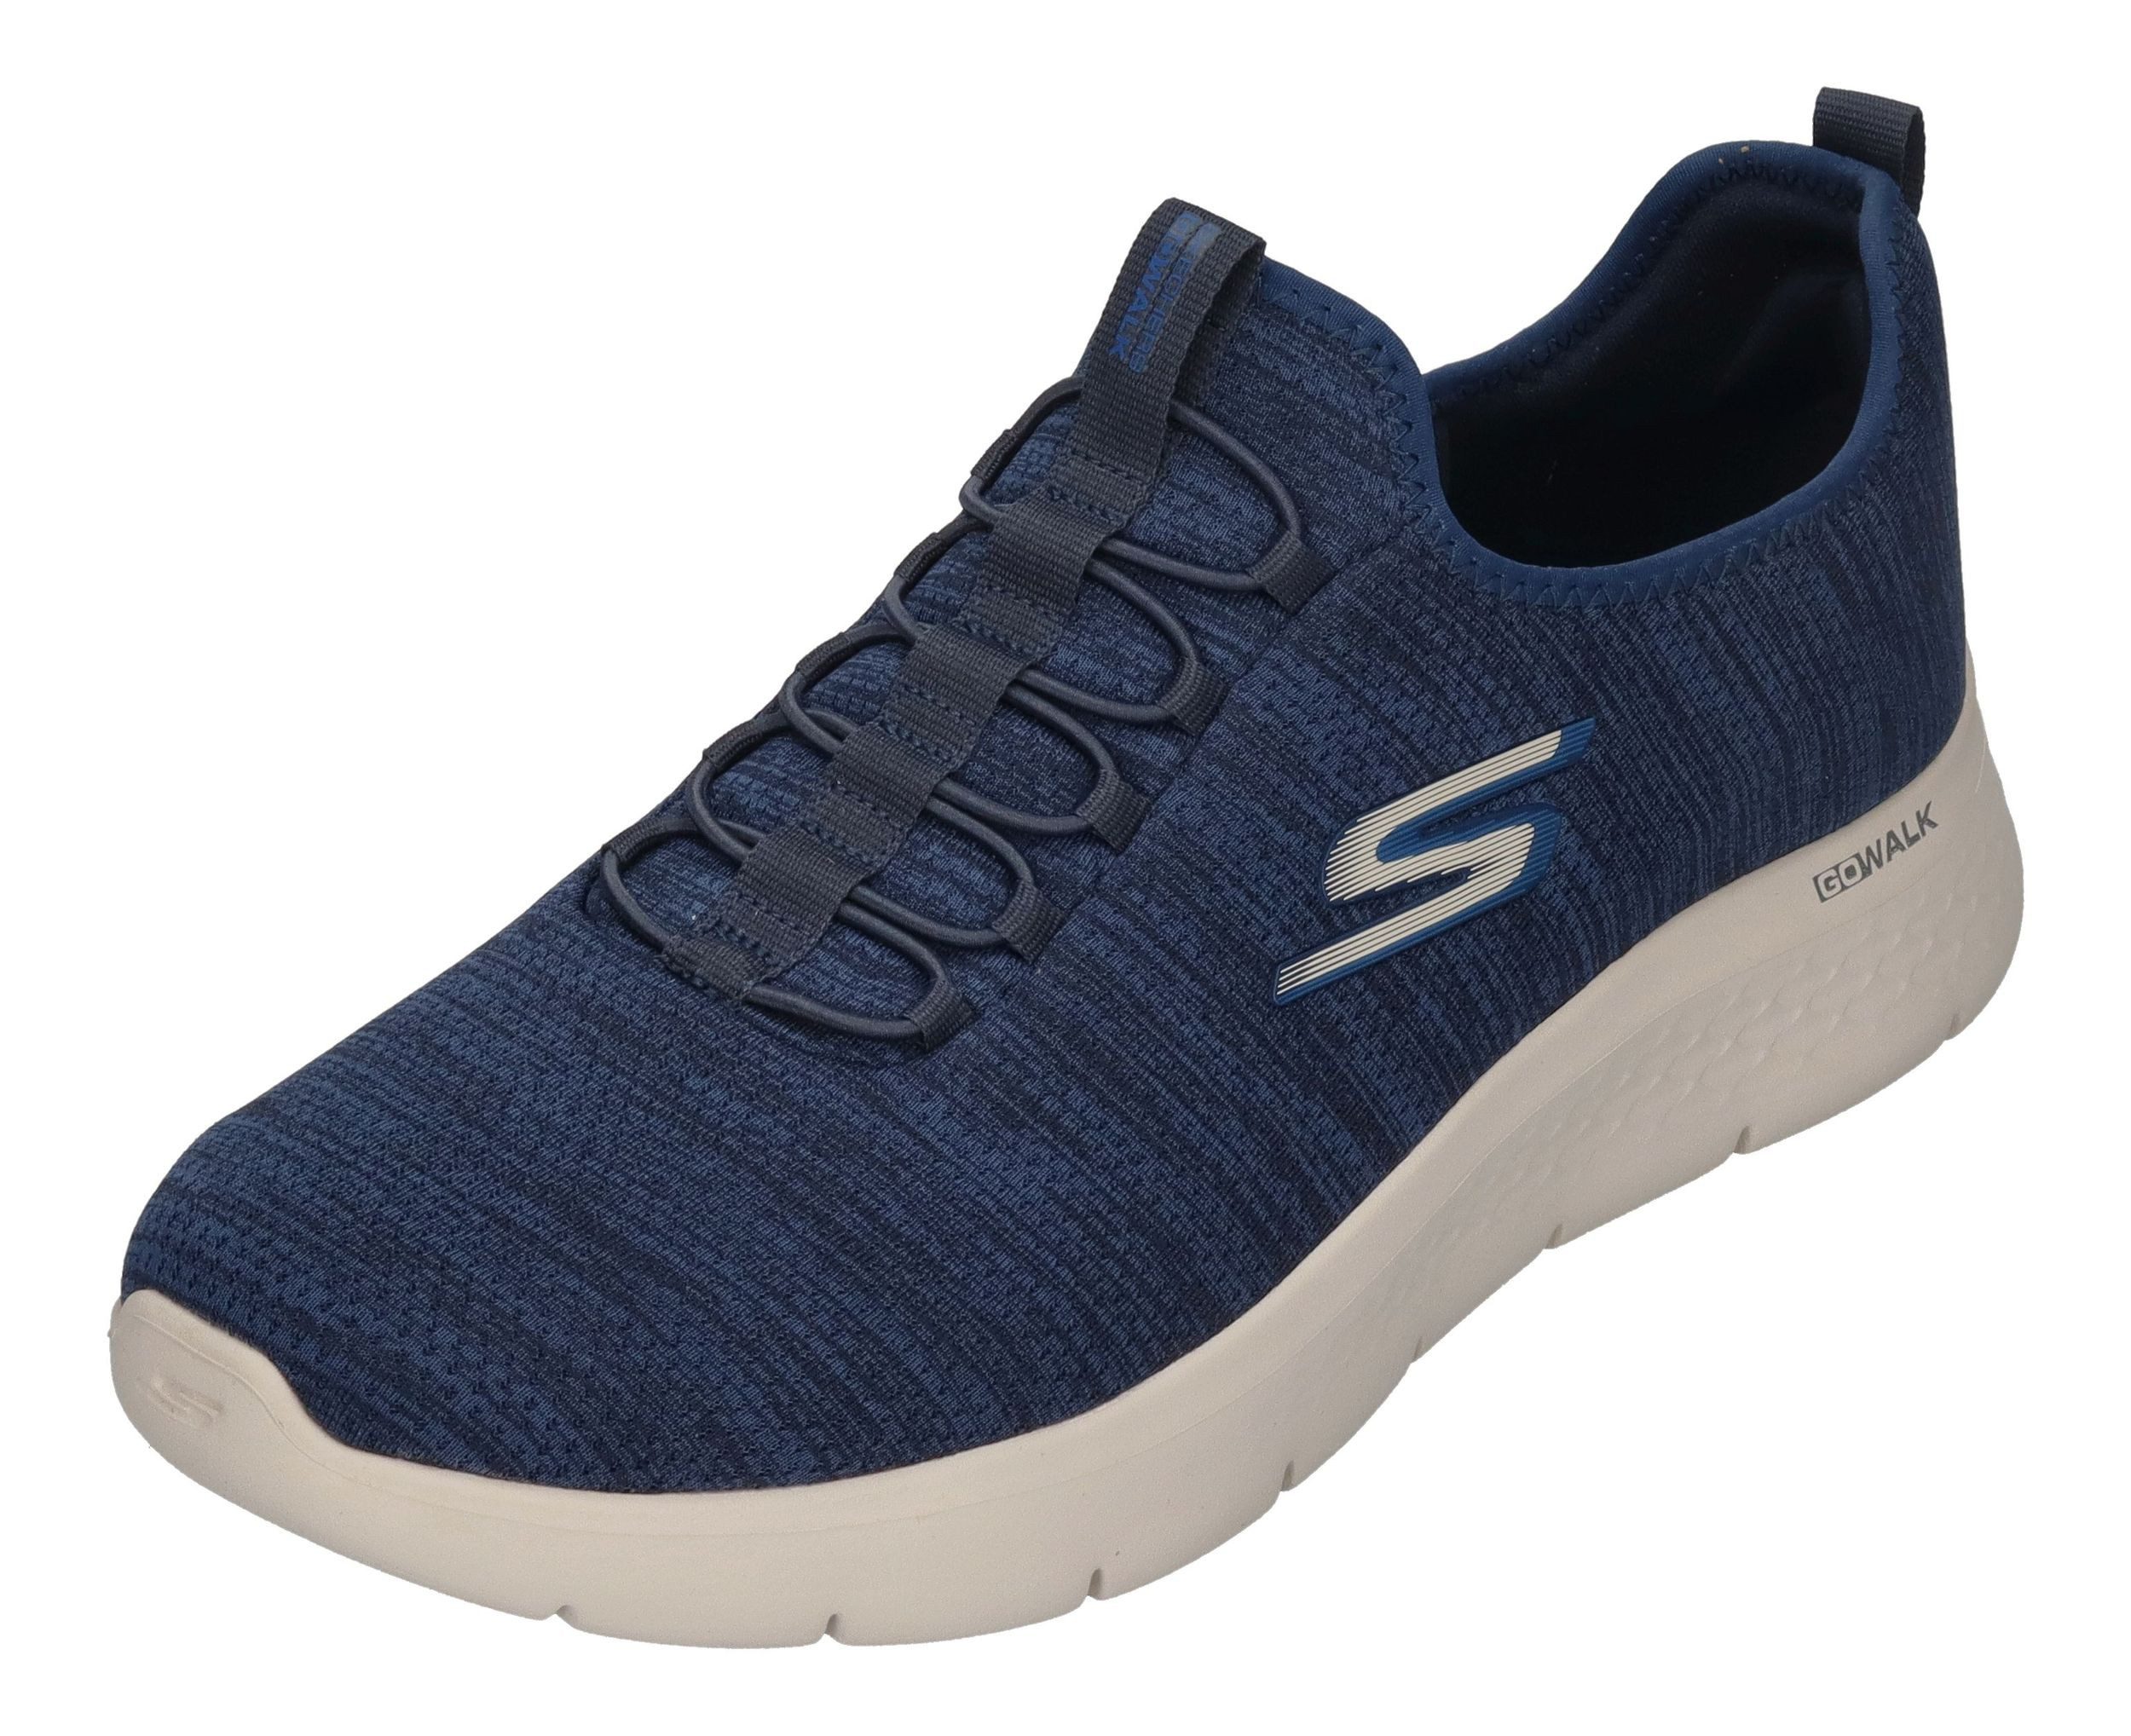 Skechers GO WALK FLEX ULTRA 216484 Sneaker Navy Blue